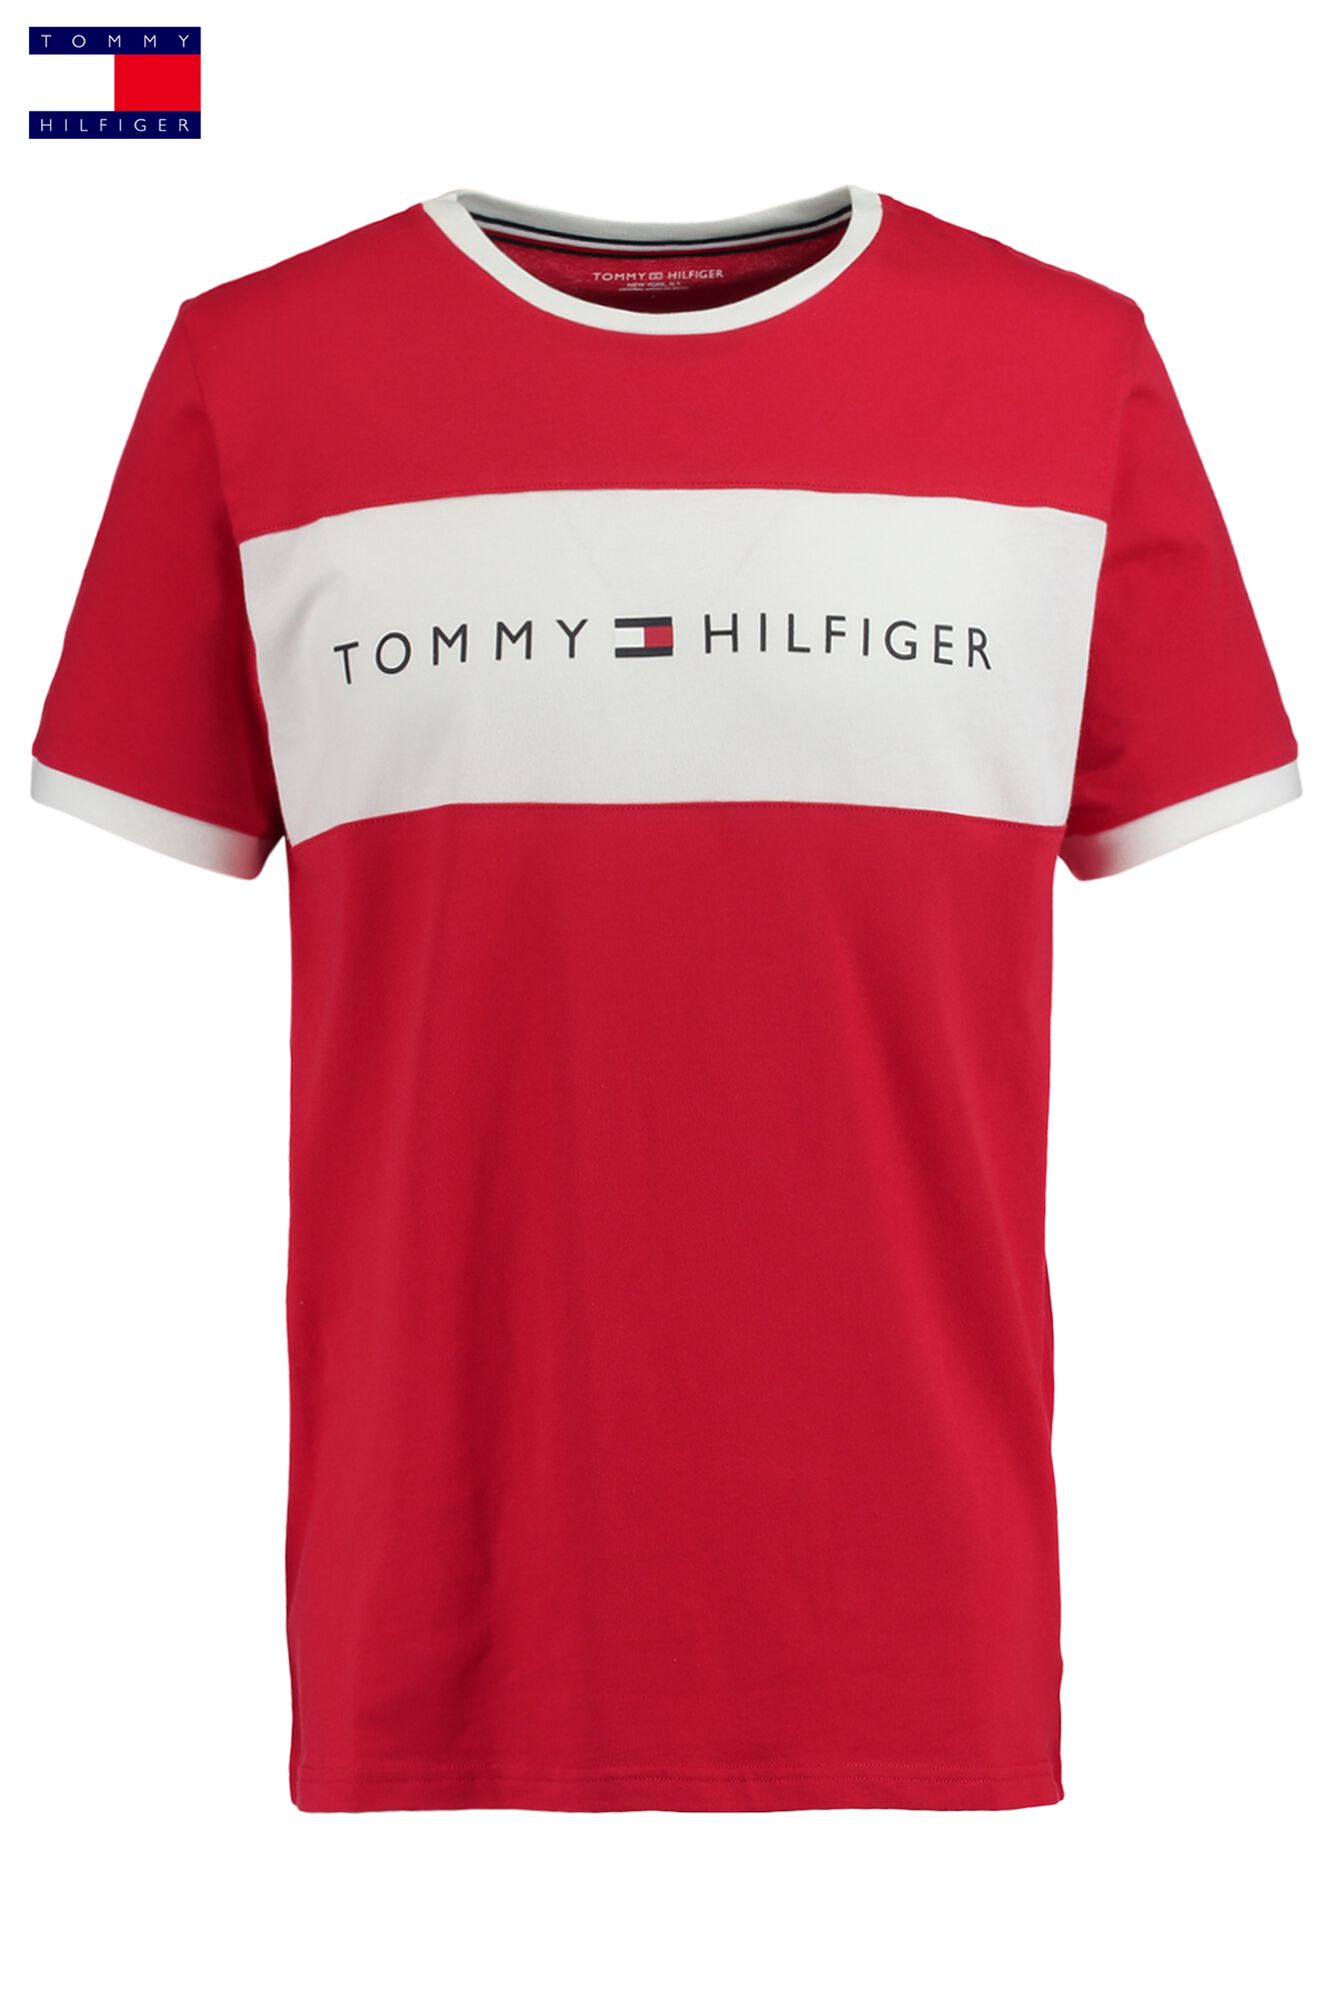 Men T-shirt Tommy Hilfiger Logo Red Buy Online